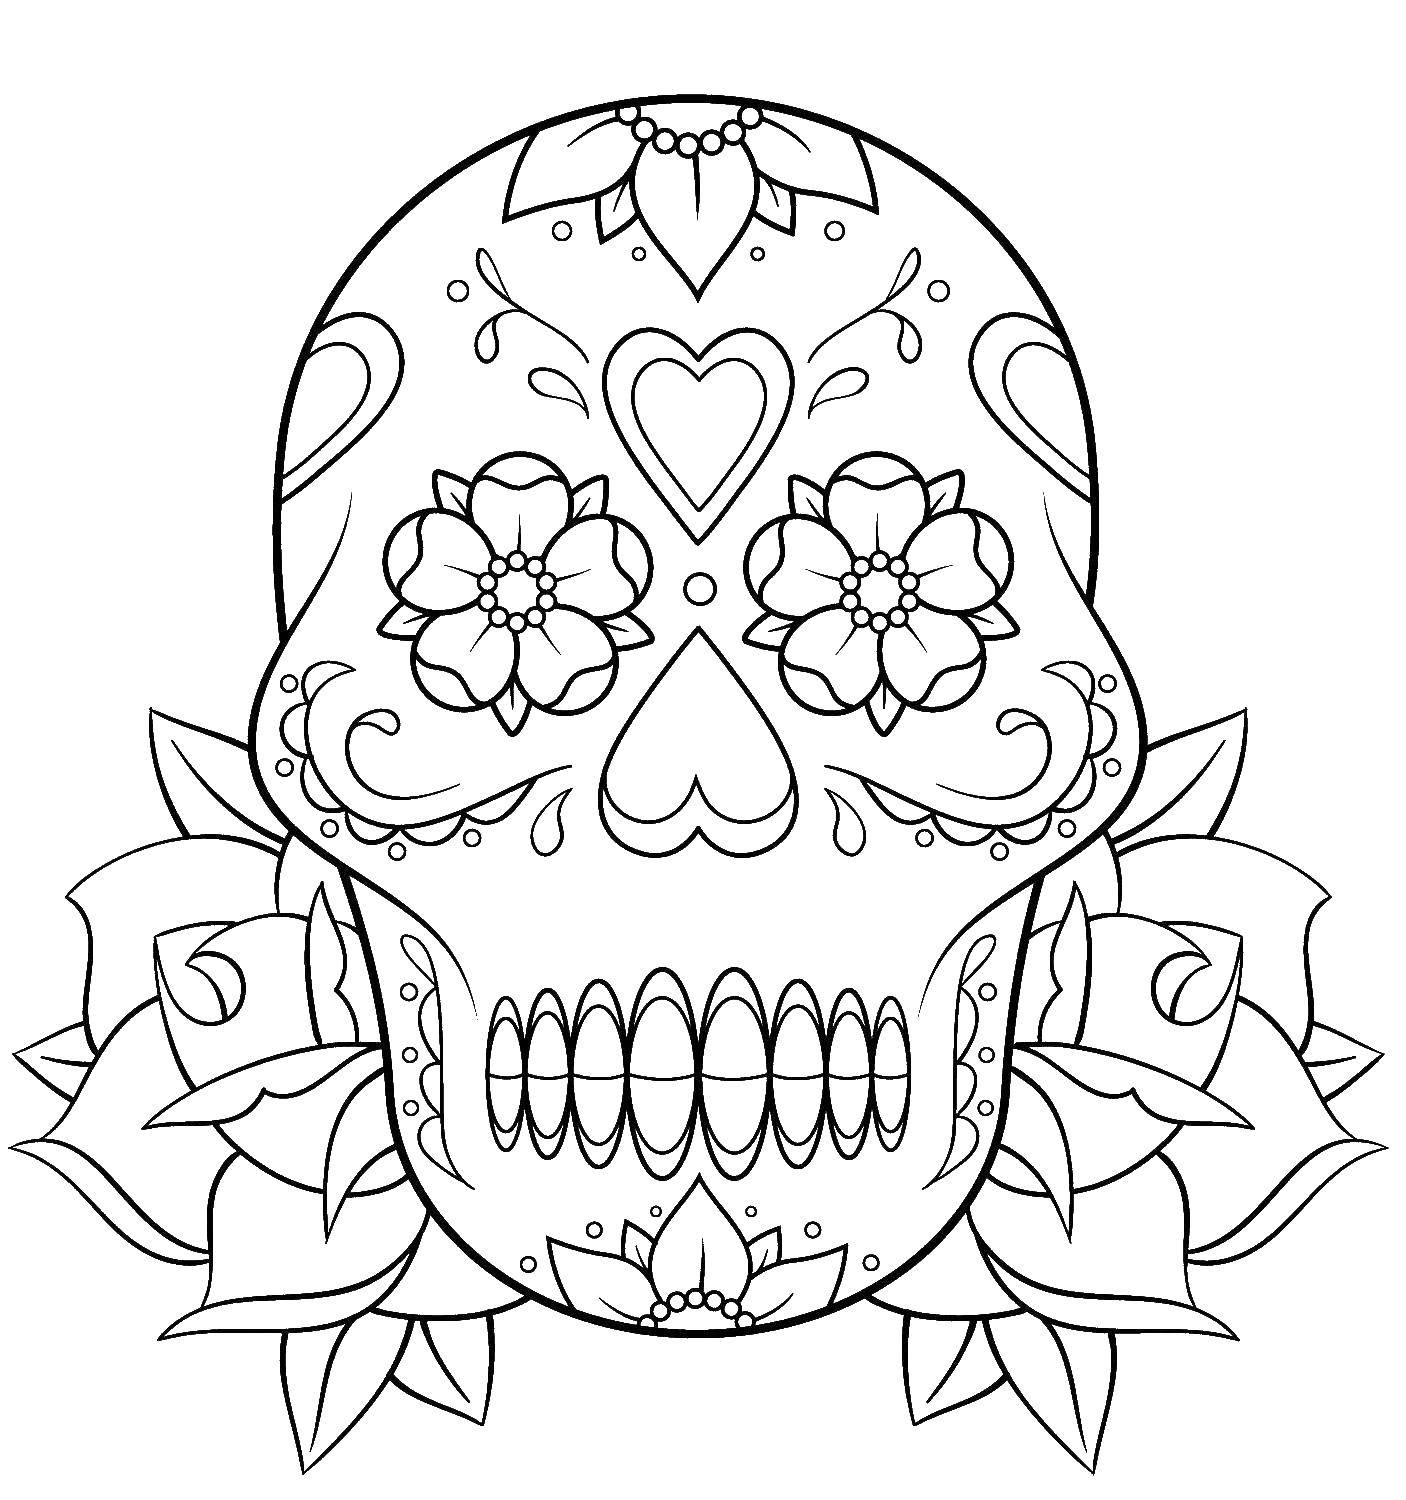 Название: Раскраска Красивый череп. Категория: Череп. Теги: череп, узоры, цветы.